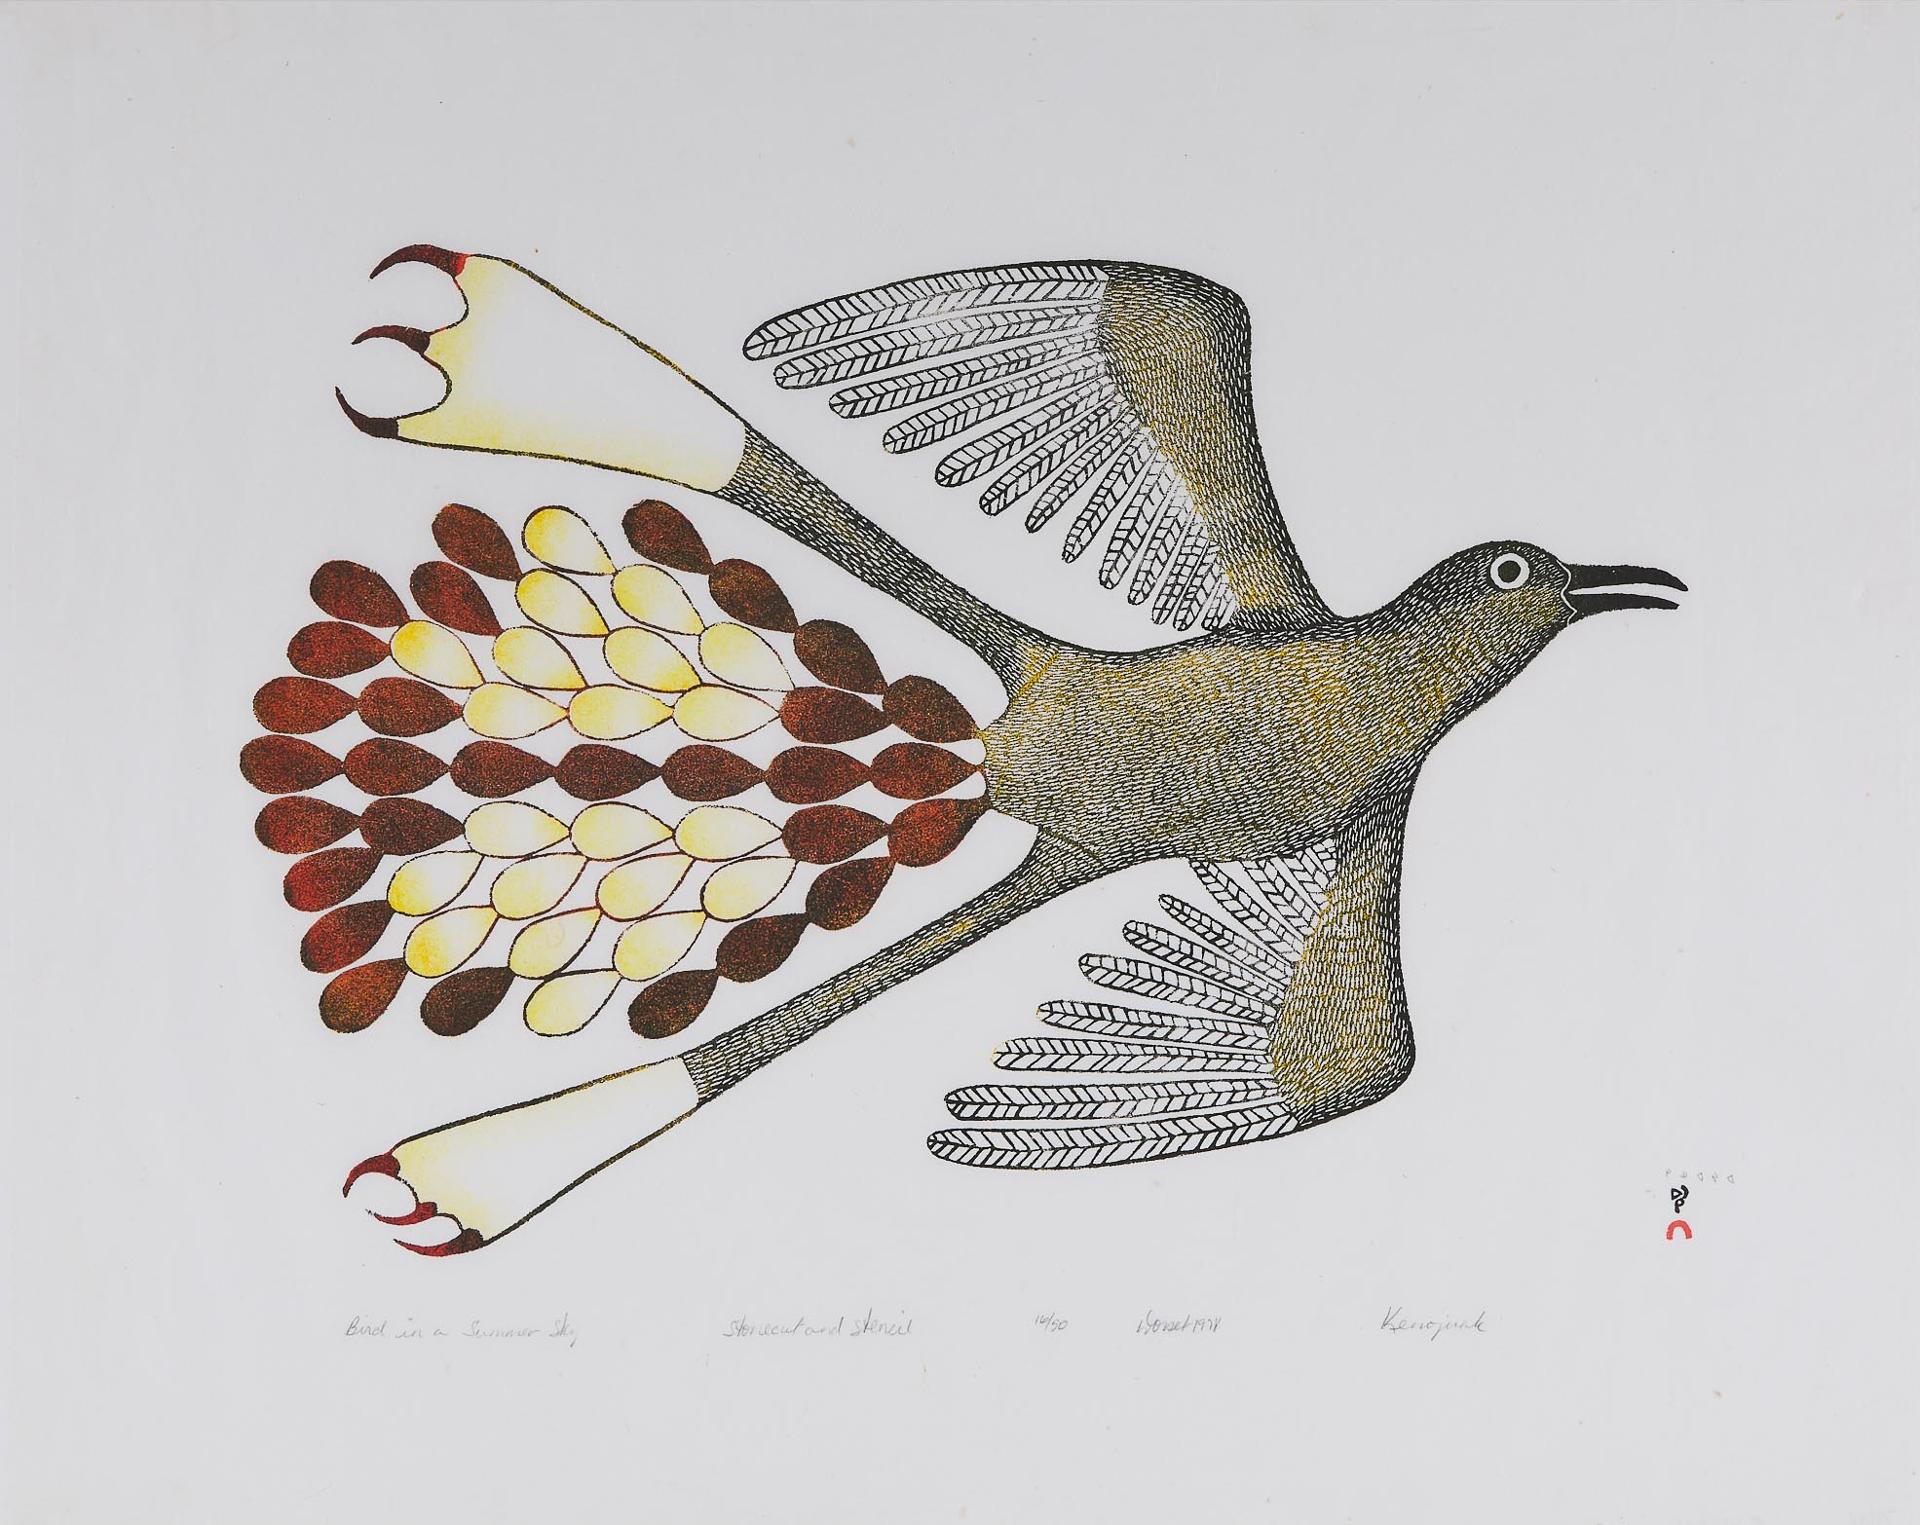 Kenojuak Ashevak (1927-2013) - Bird In A Summer Sky, 1978